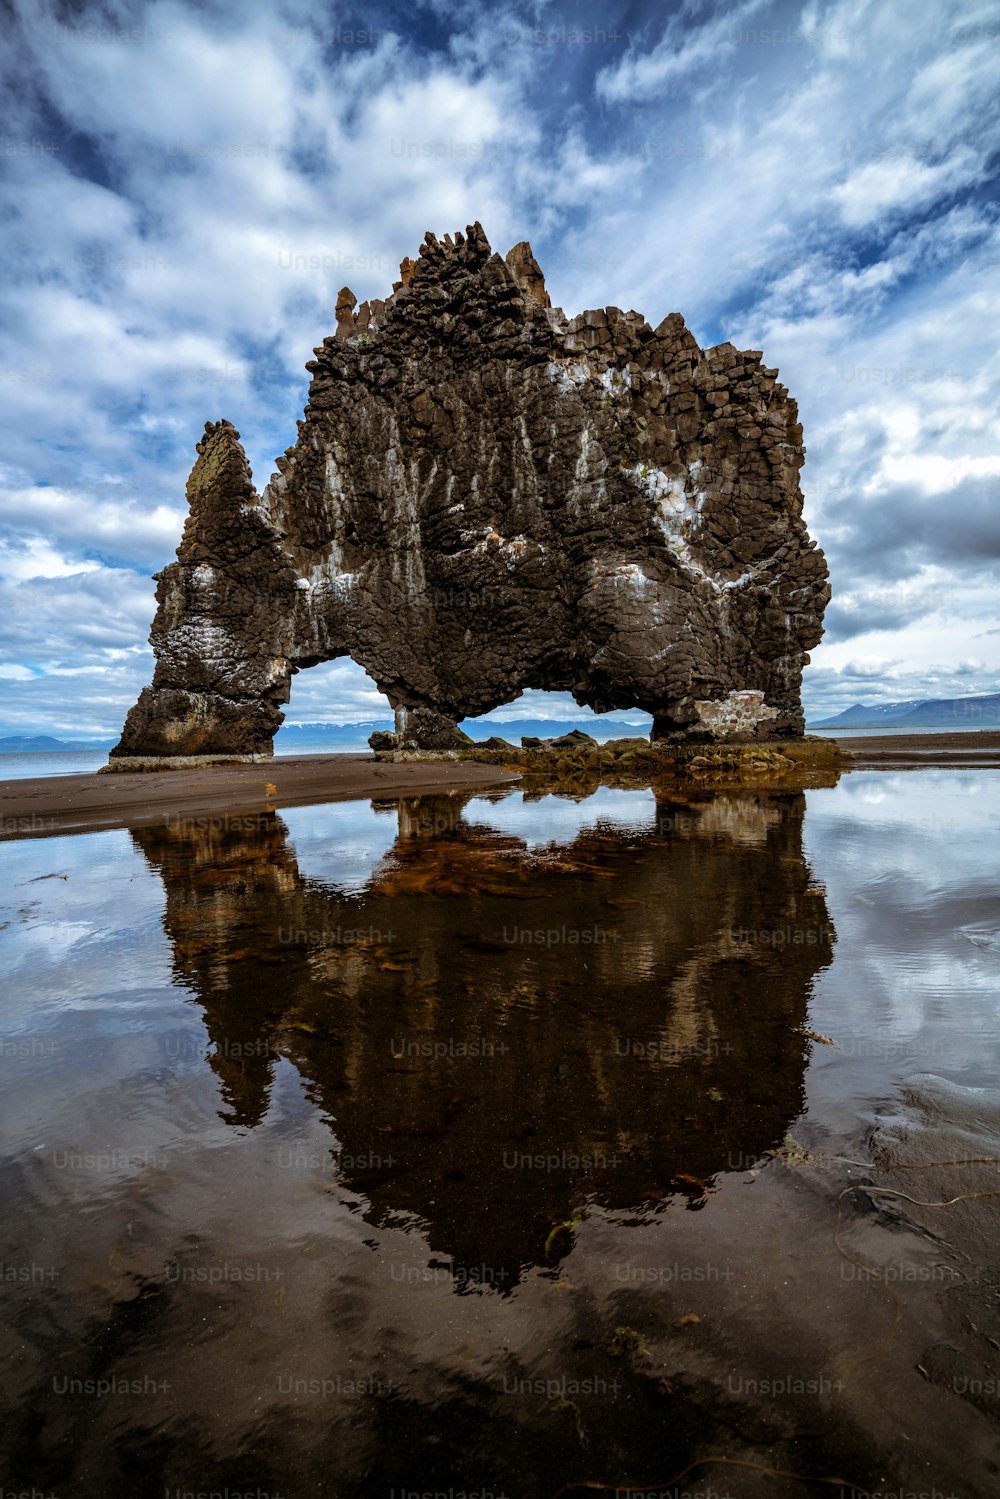 Hvitserkur est une roche basaltique unique en Islande. Le majestueux Hvitserkur est un monolithe de 15 mètres de haut situé au large de la péninsule de Vatnsnes, dans le nord-ouest de l’Islande. C’est la célèbre destination de voyage de l’Islande.